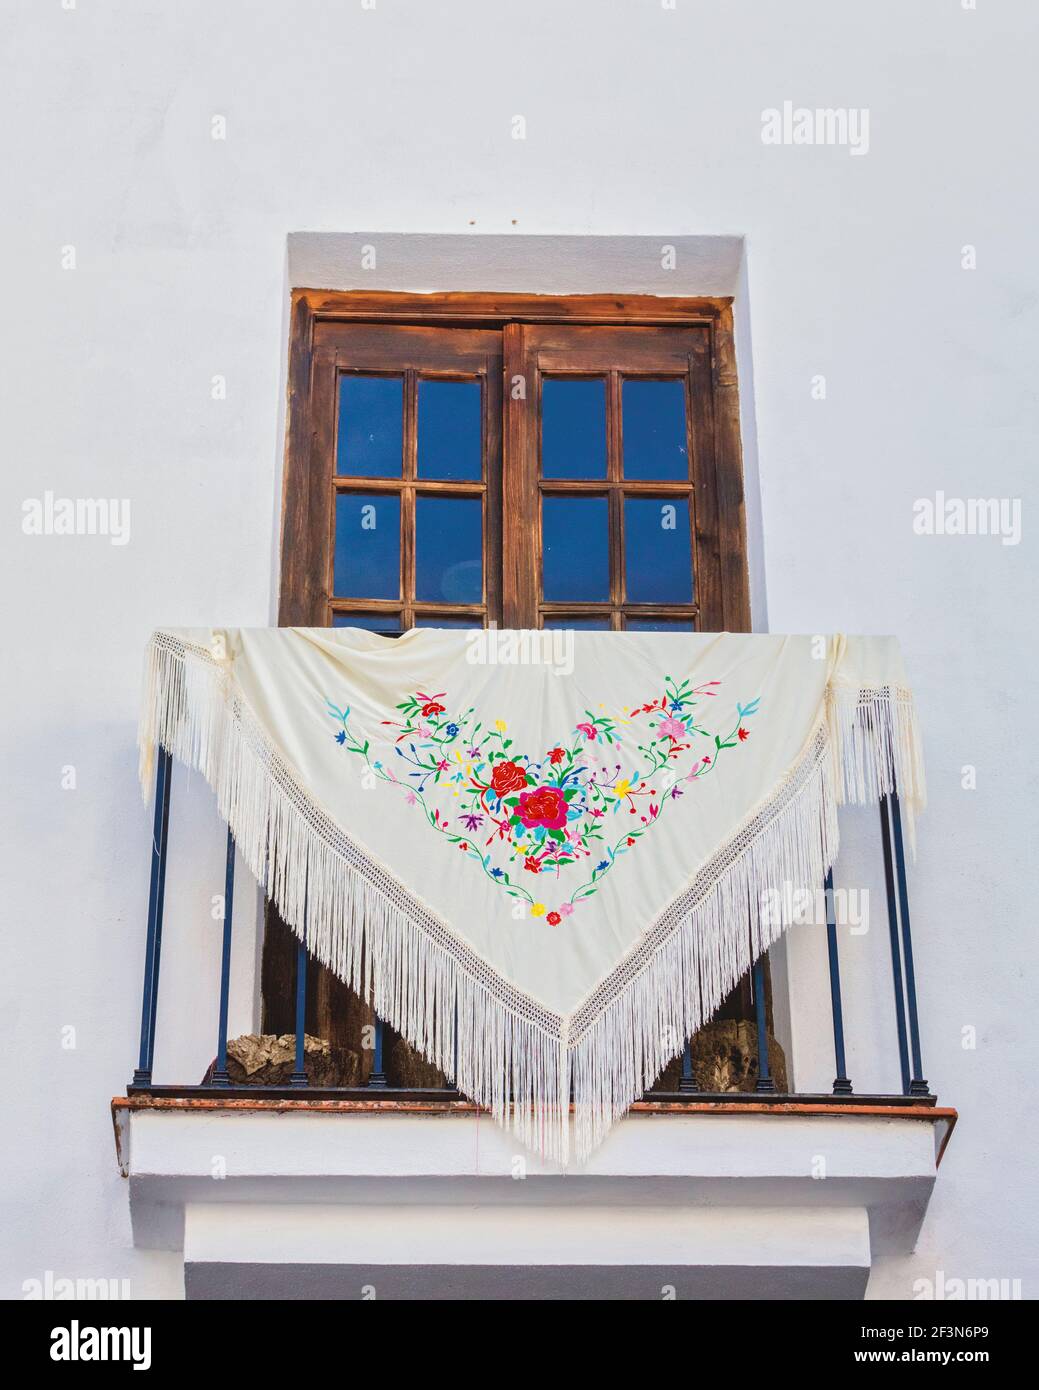 Un châle brodé sur un balcon pour la Toussaint - Dia de Todos los Santos, ou Tosantos. Ronda, province de Malaga, Andalousie, Espagne. Banque D'Images